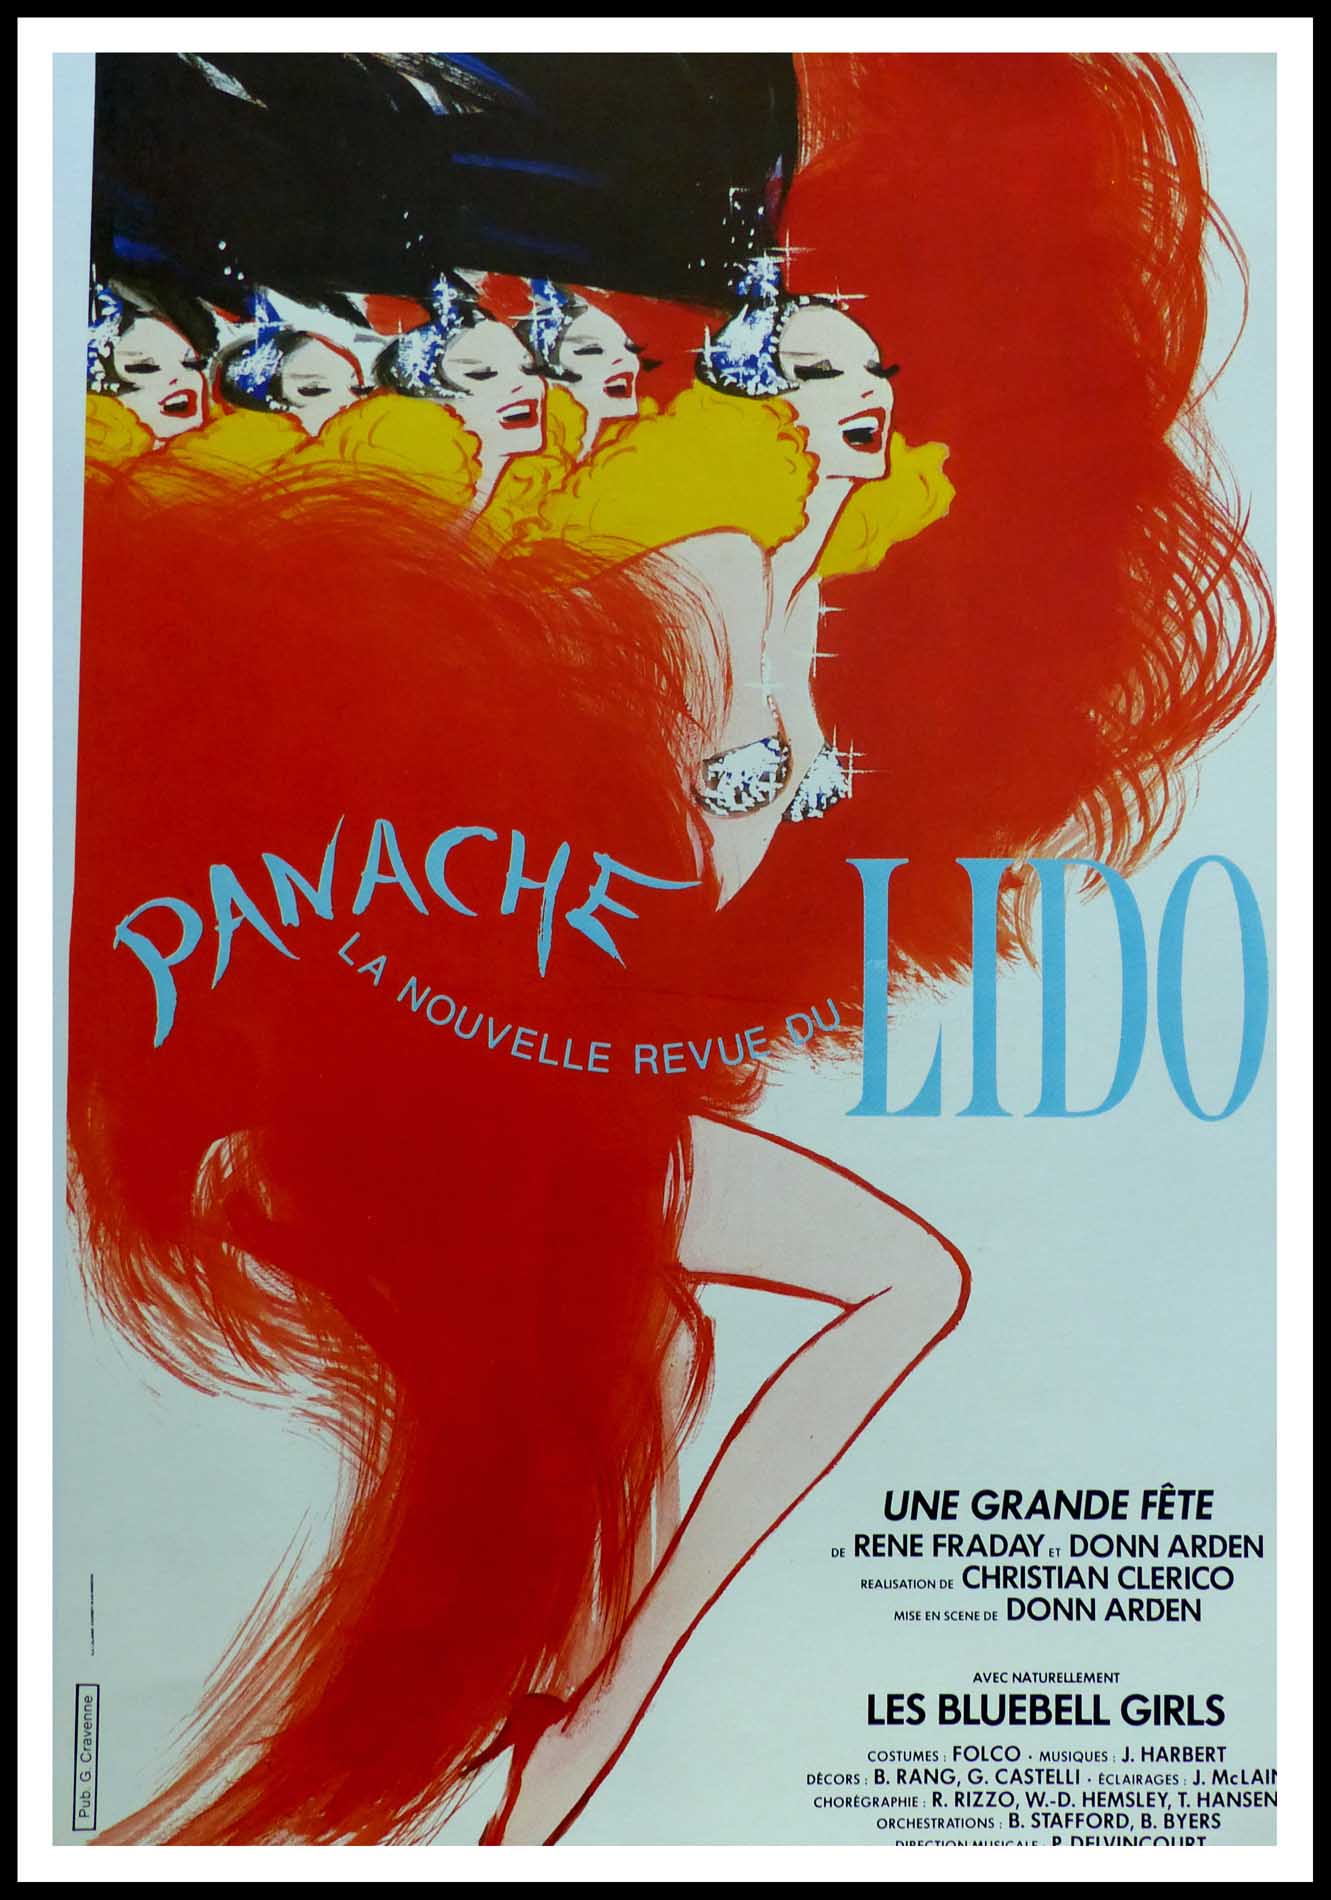 (alt="Original vintage poster Panache, la nouvelle revue du Lido 1980, signed in the plate by Gruau and printed by LaLande-Courbet Ed. Pub Cravenne")